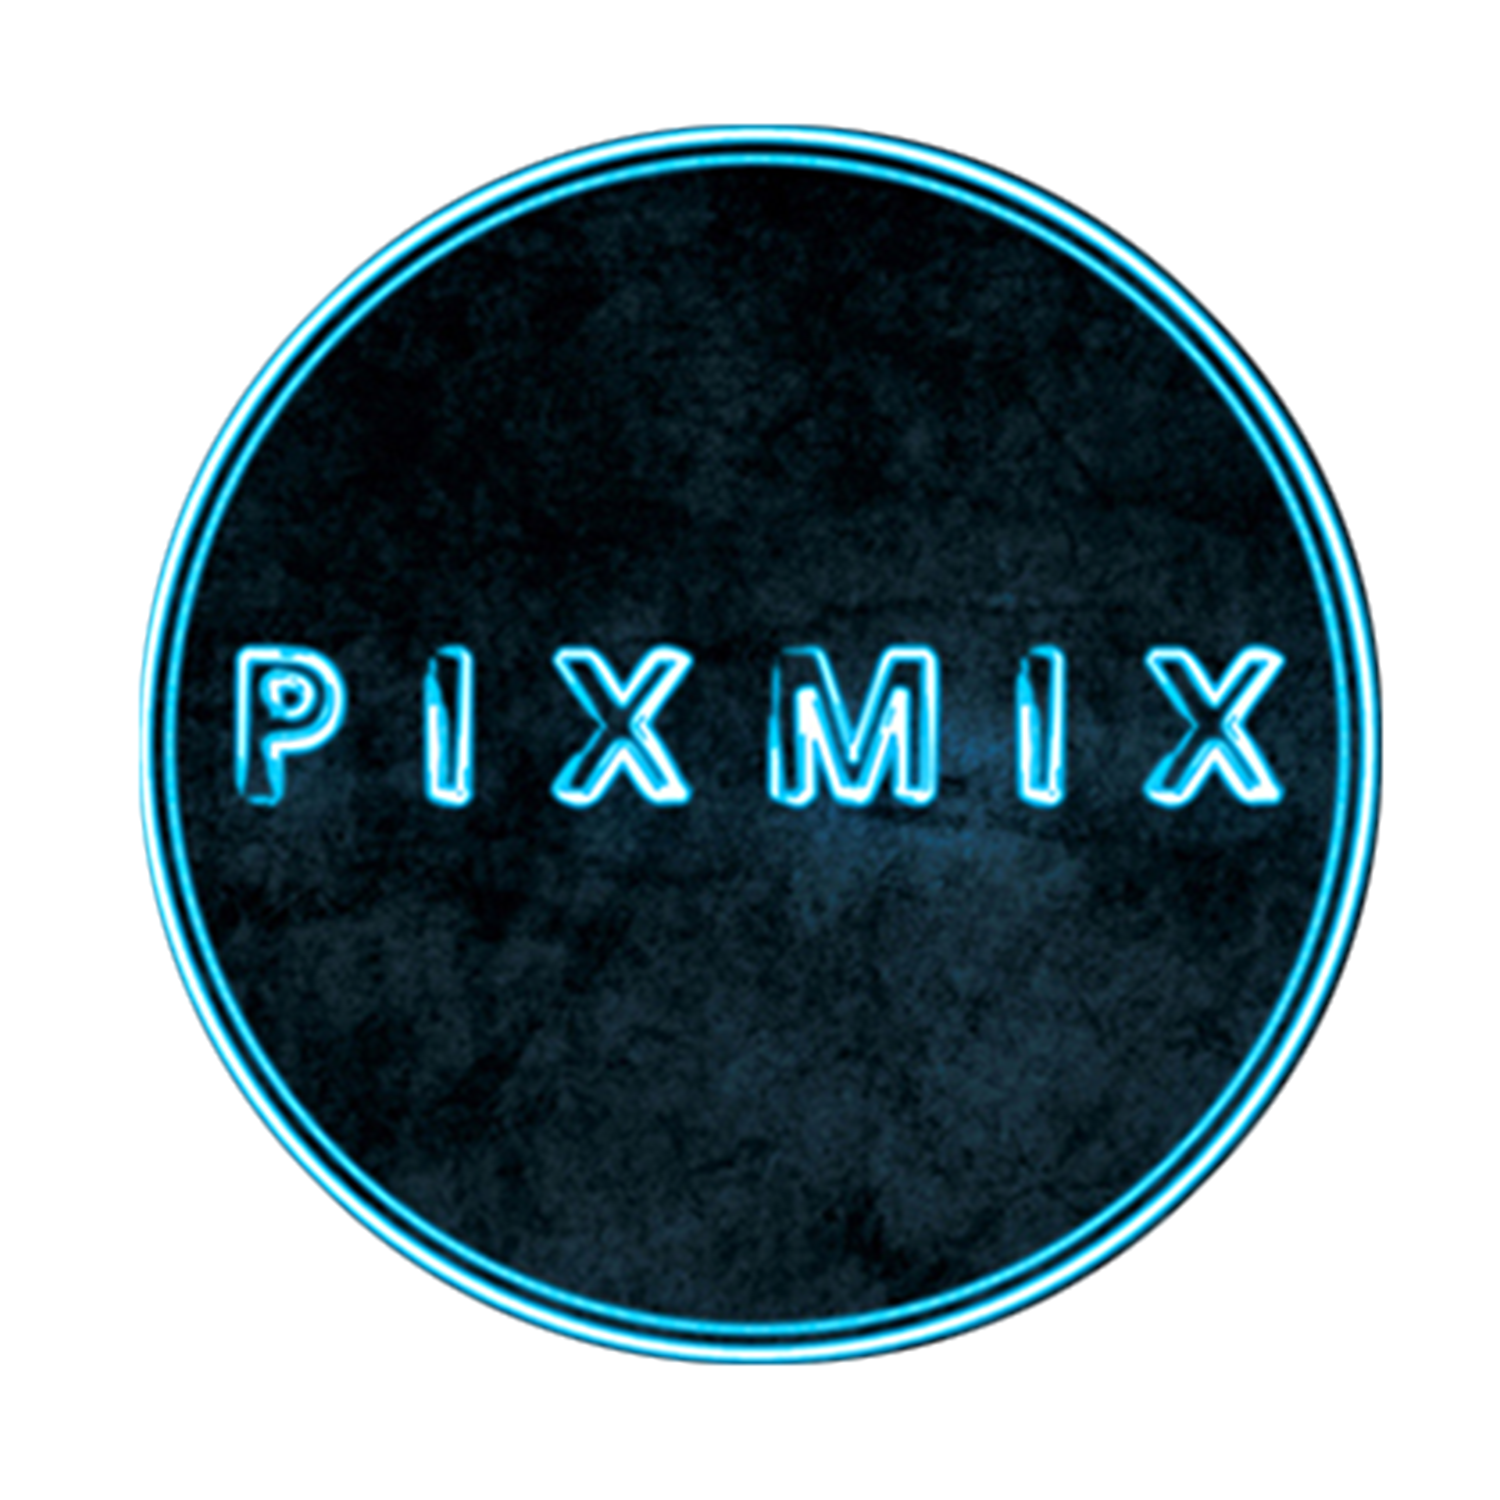 Pixmix